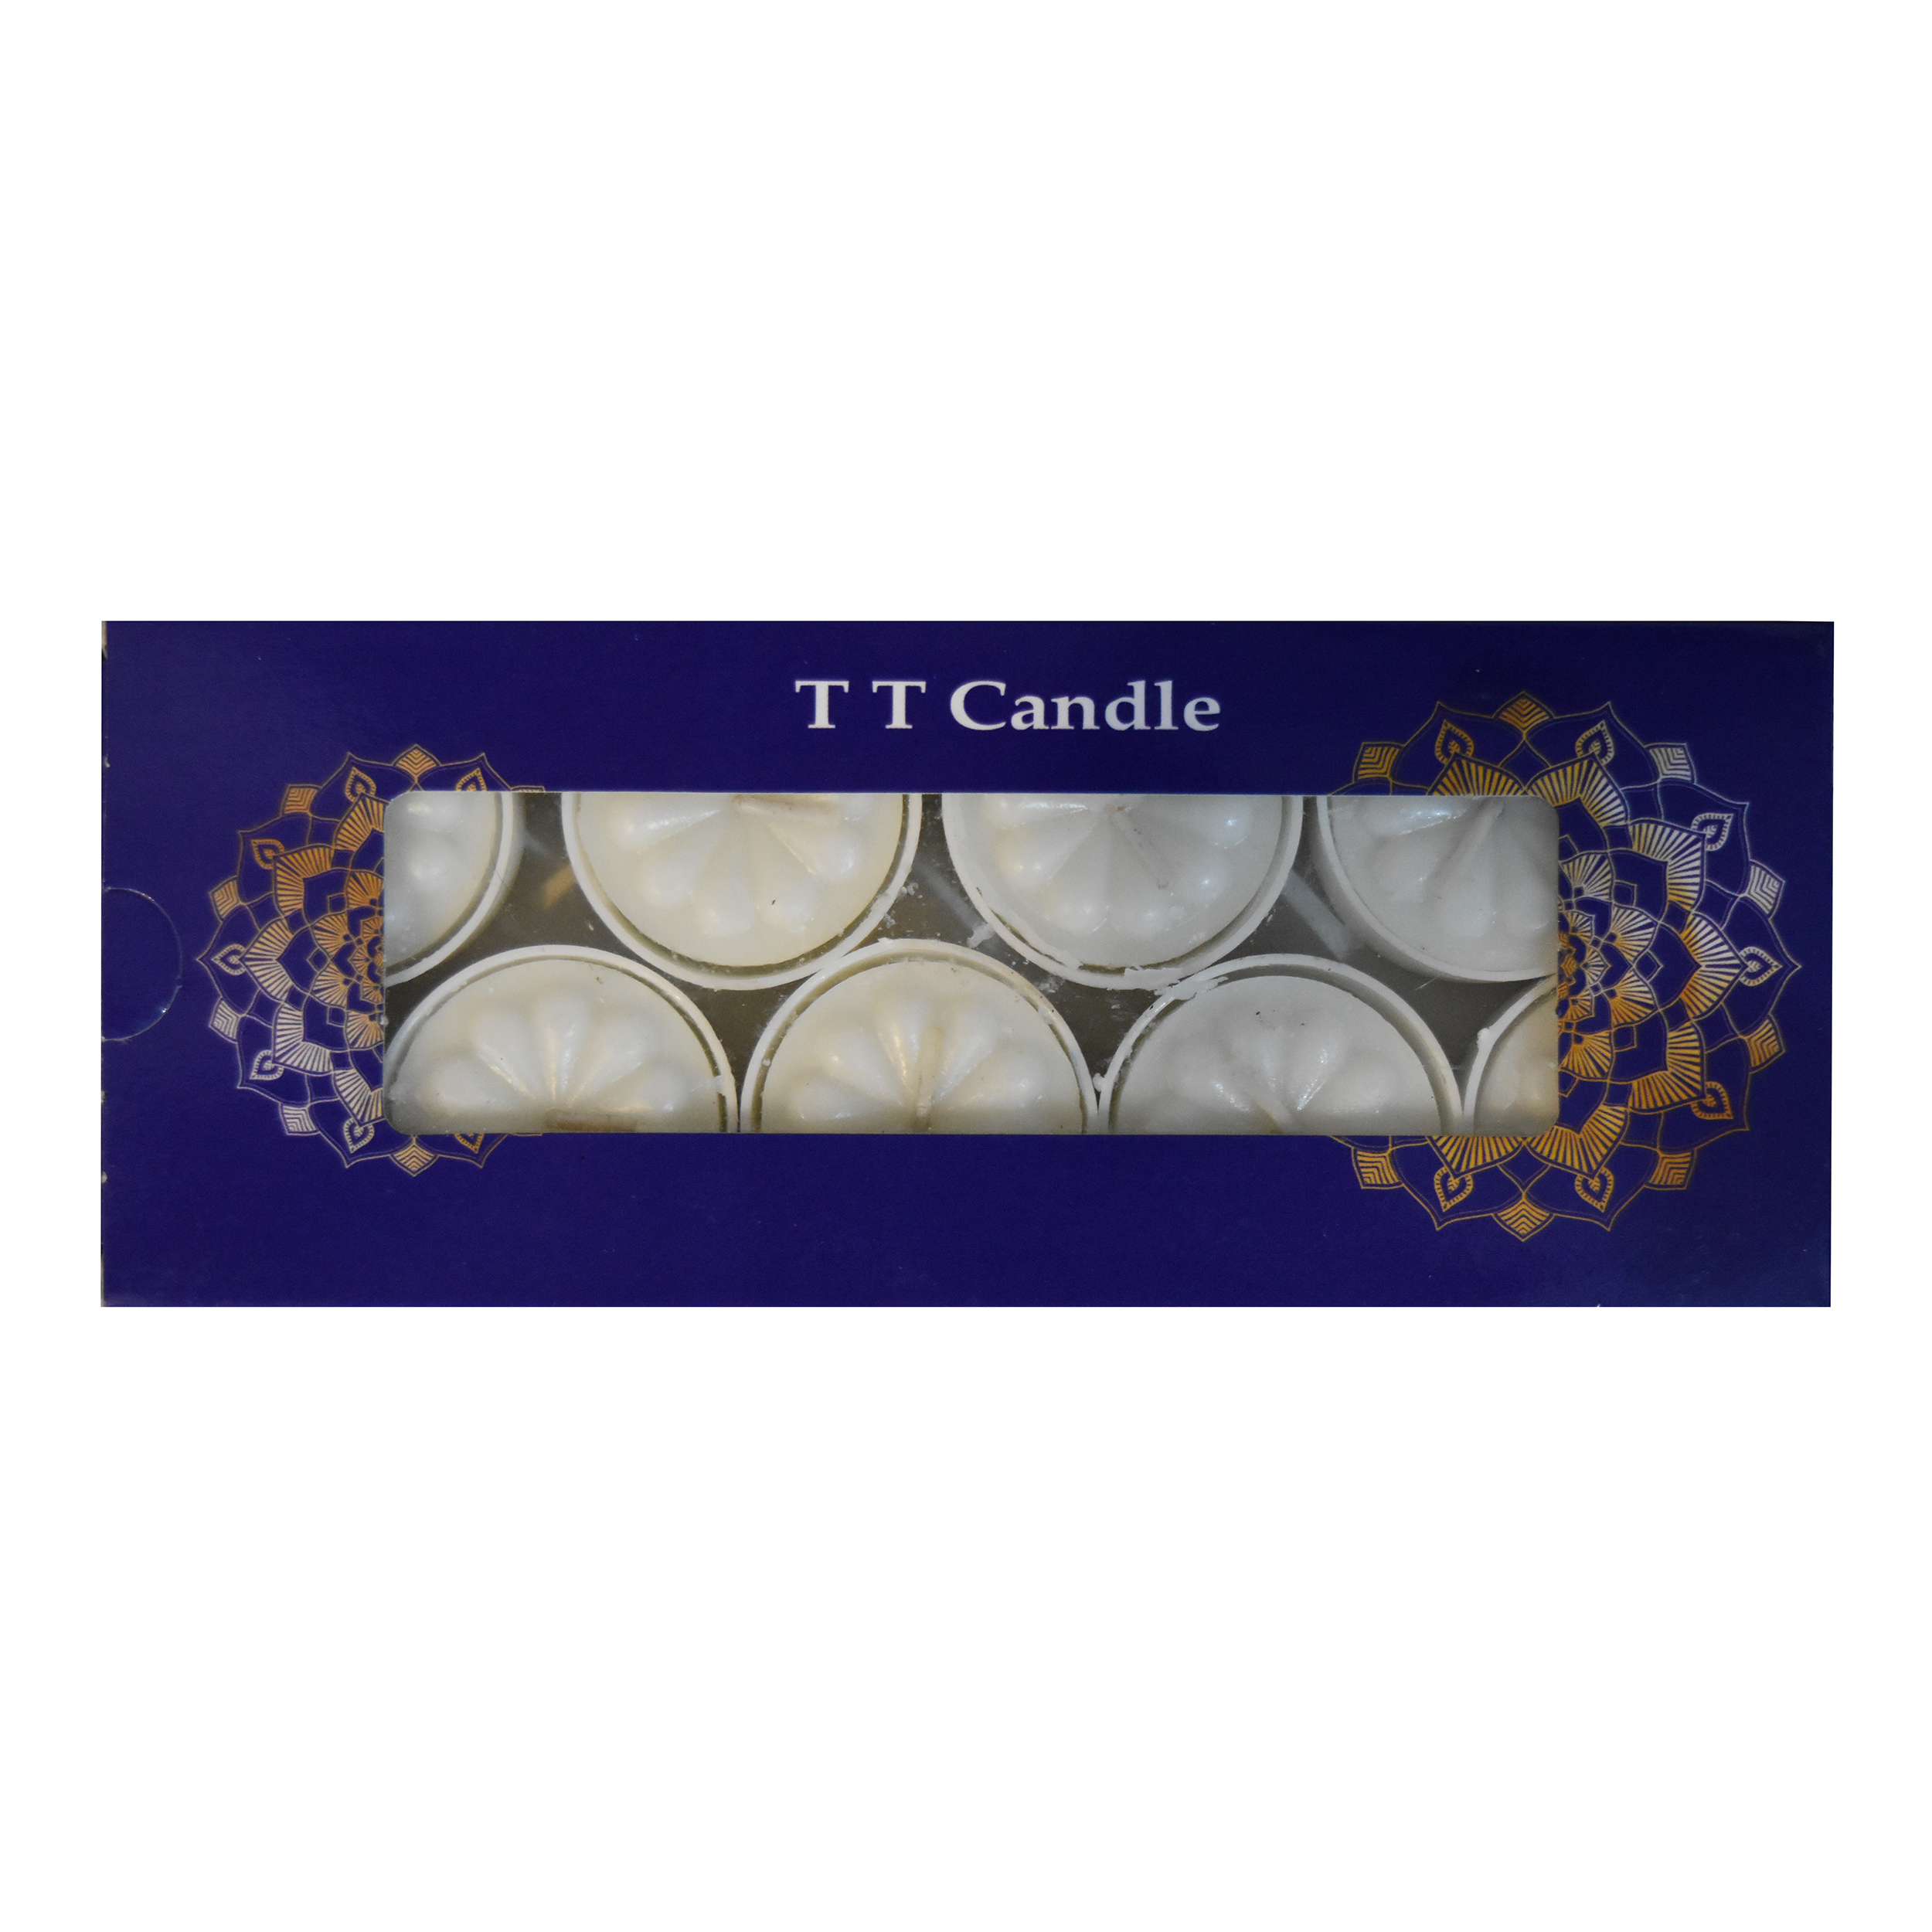 شمع مدل T T candle مجموعه 10 عددی